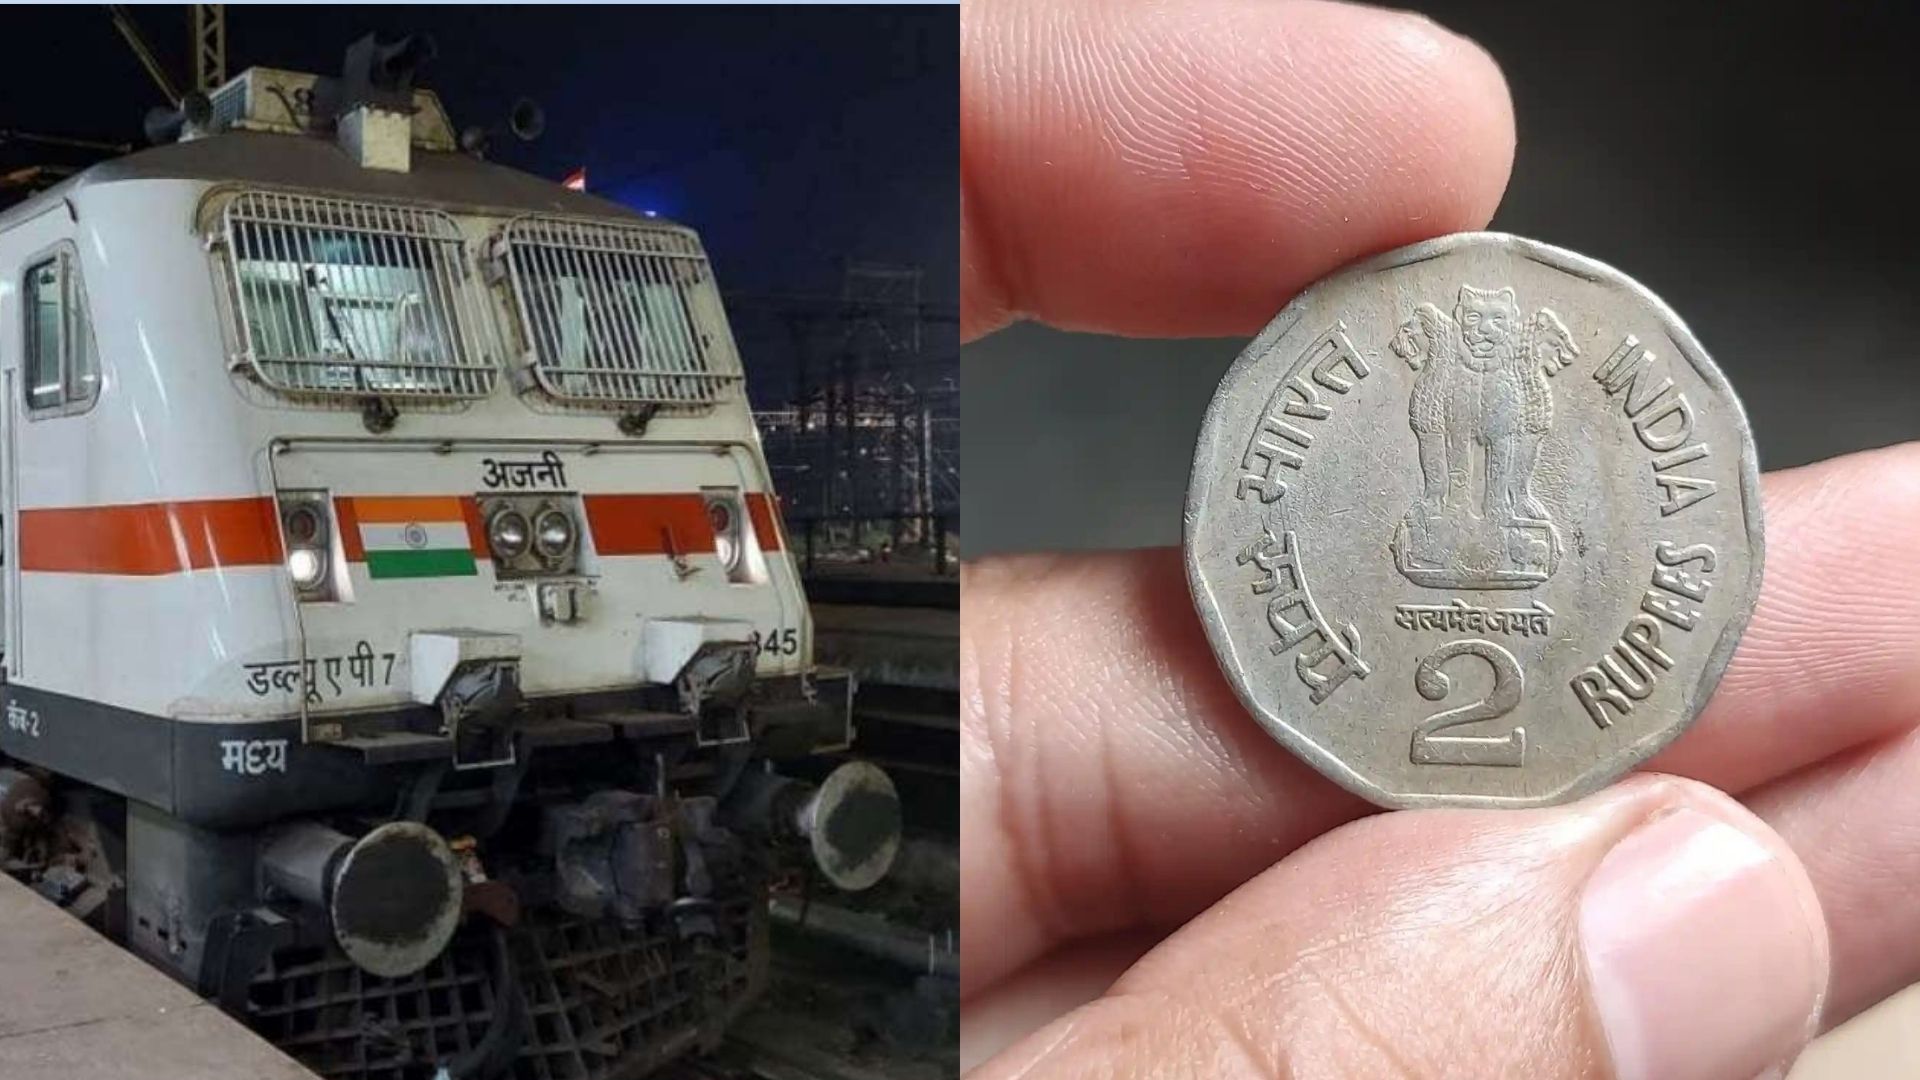 2 रुपये के रिफंड के लिए रेलवे से लड़ी 5 साल लड़ाई, जीत पर पीएम को थैंक्यू बोल दान किए 535 रुपये